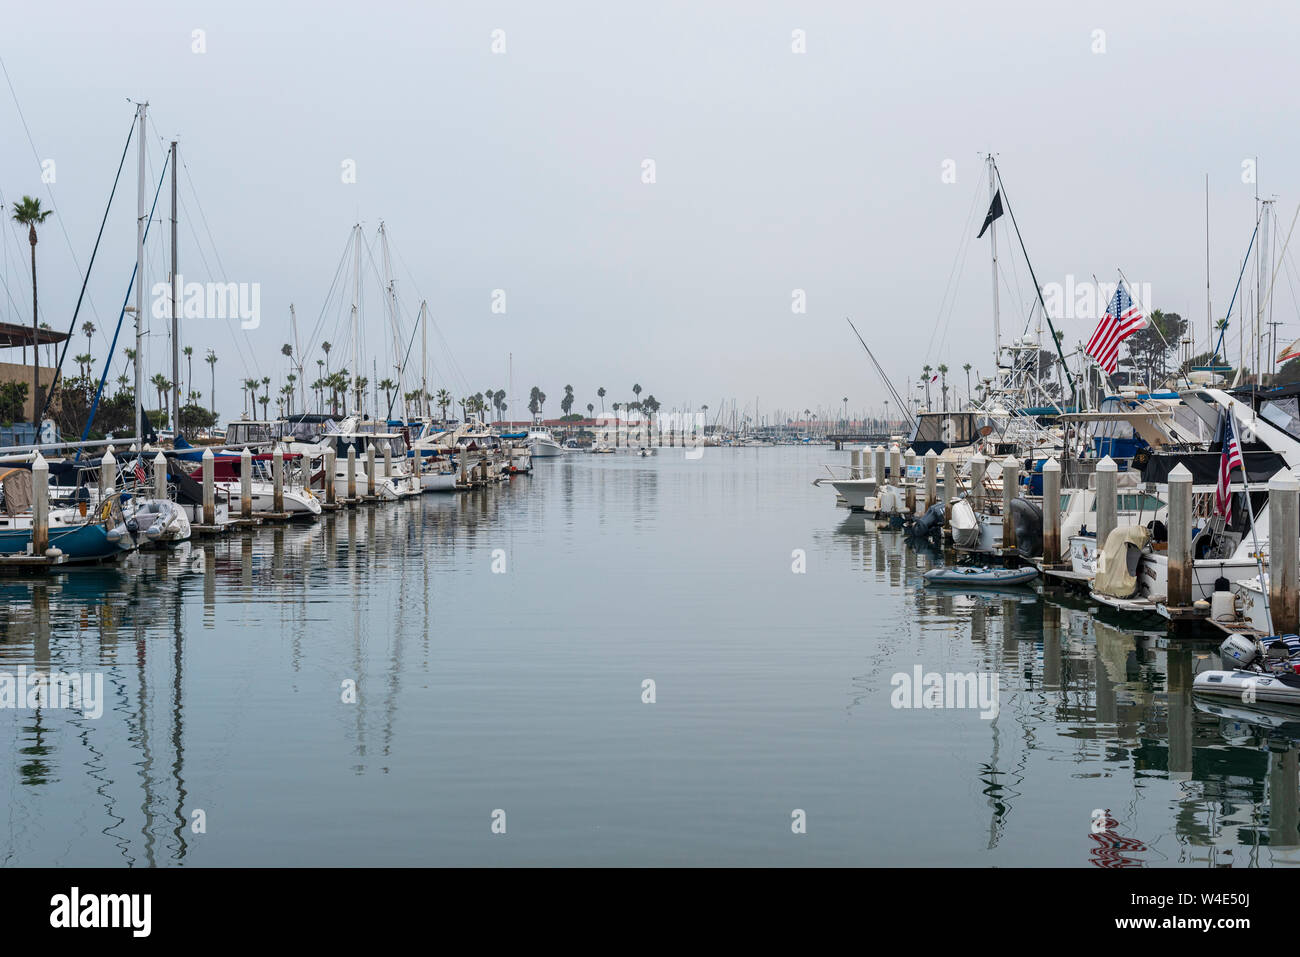 Marina with small docked boats. Stock Photo